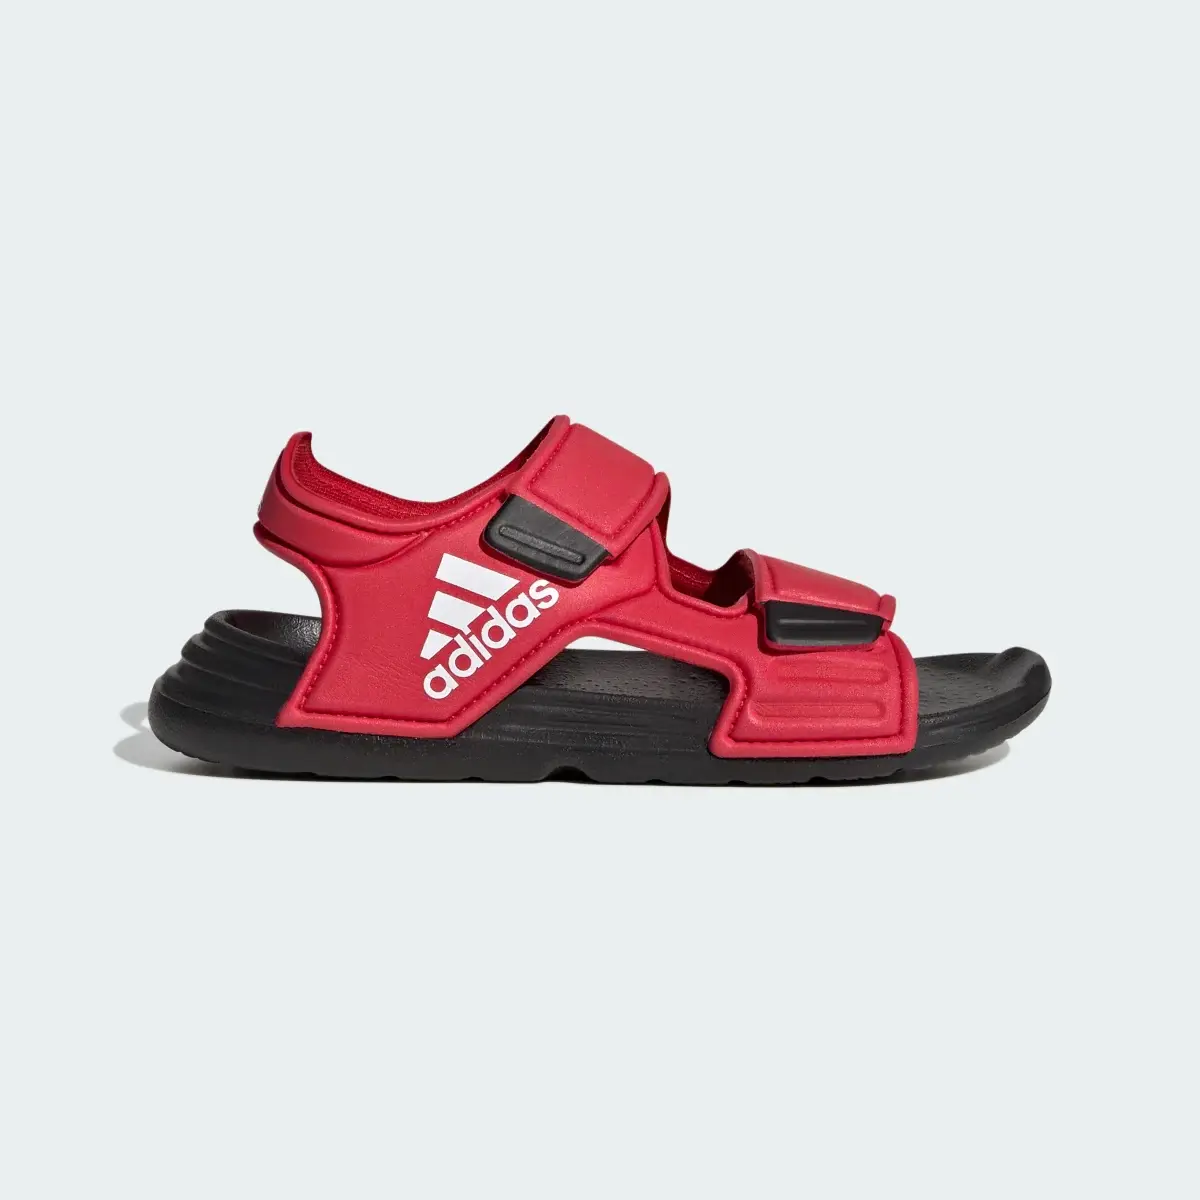 Adidas Altaswim Sandals. 2